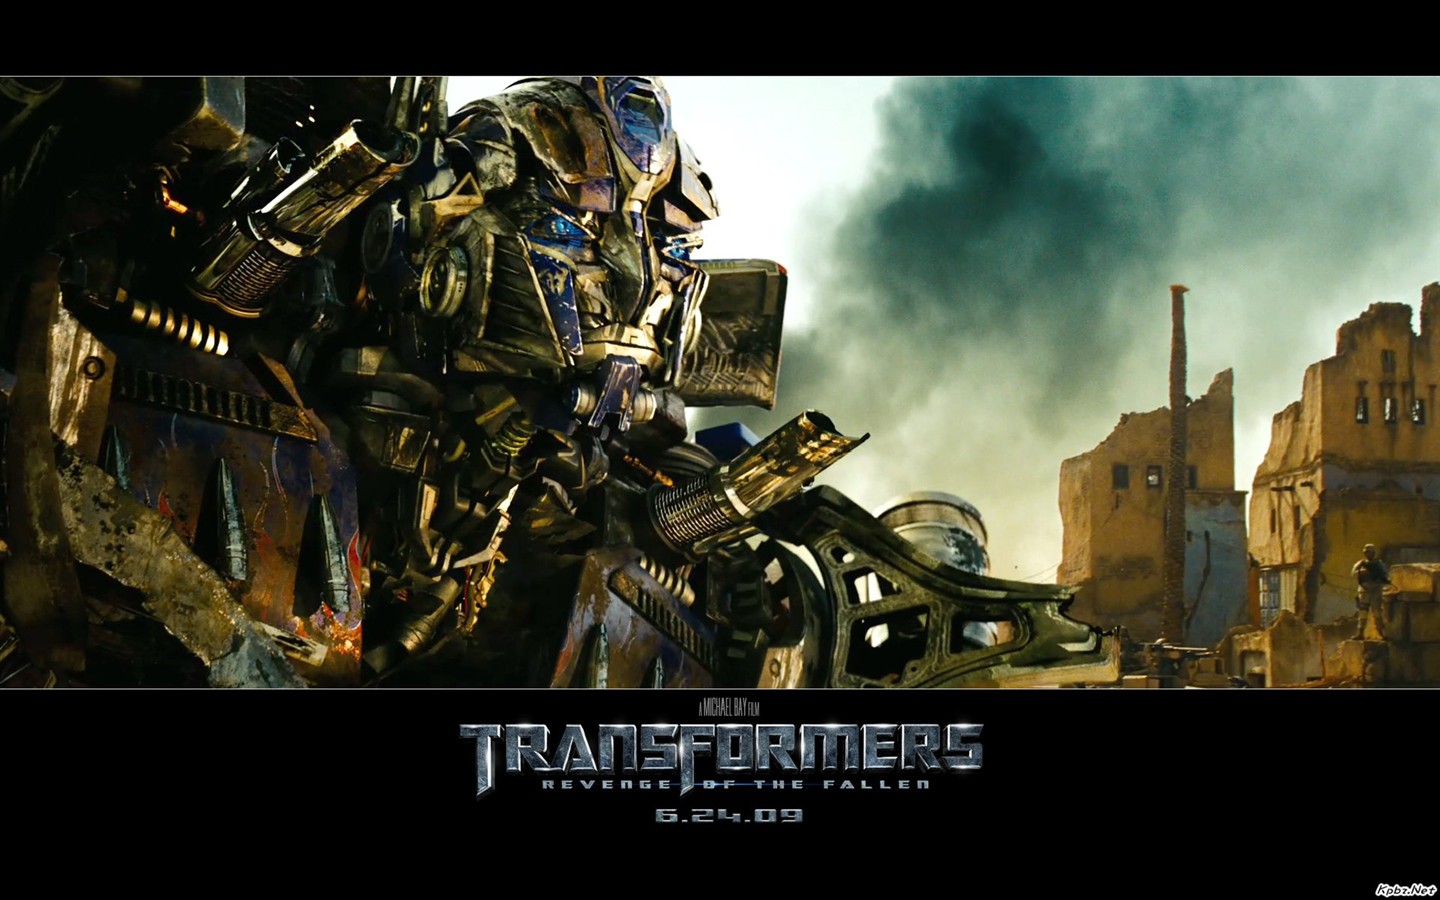 Transformers HD papel tapiz #12 - 1440x900